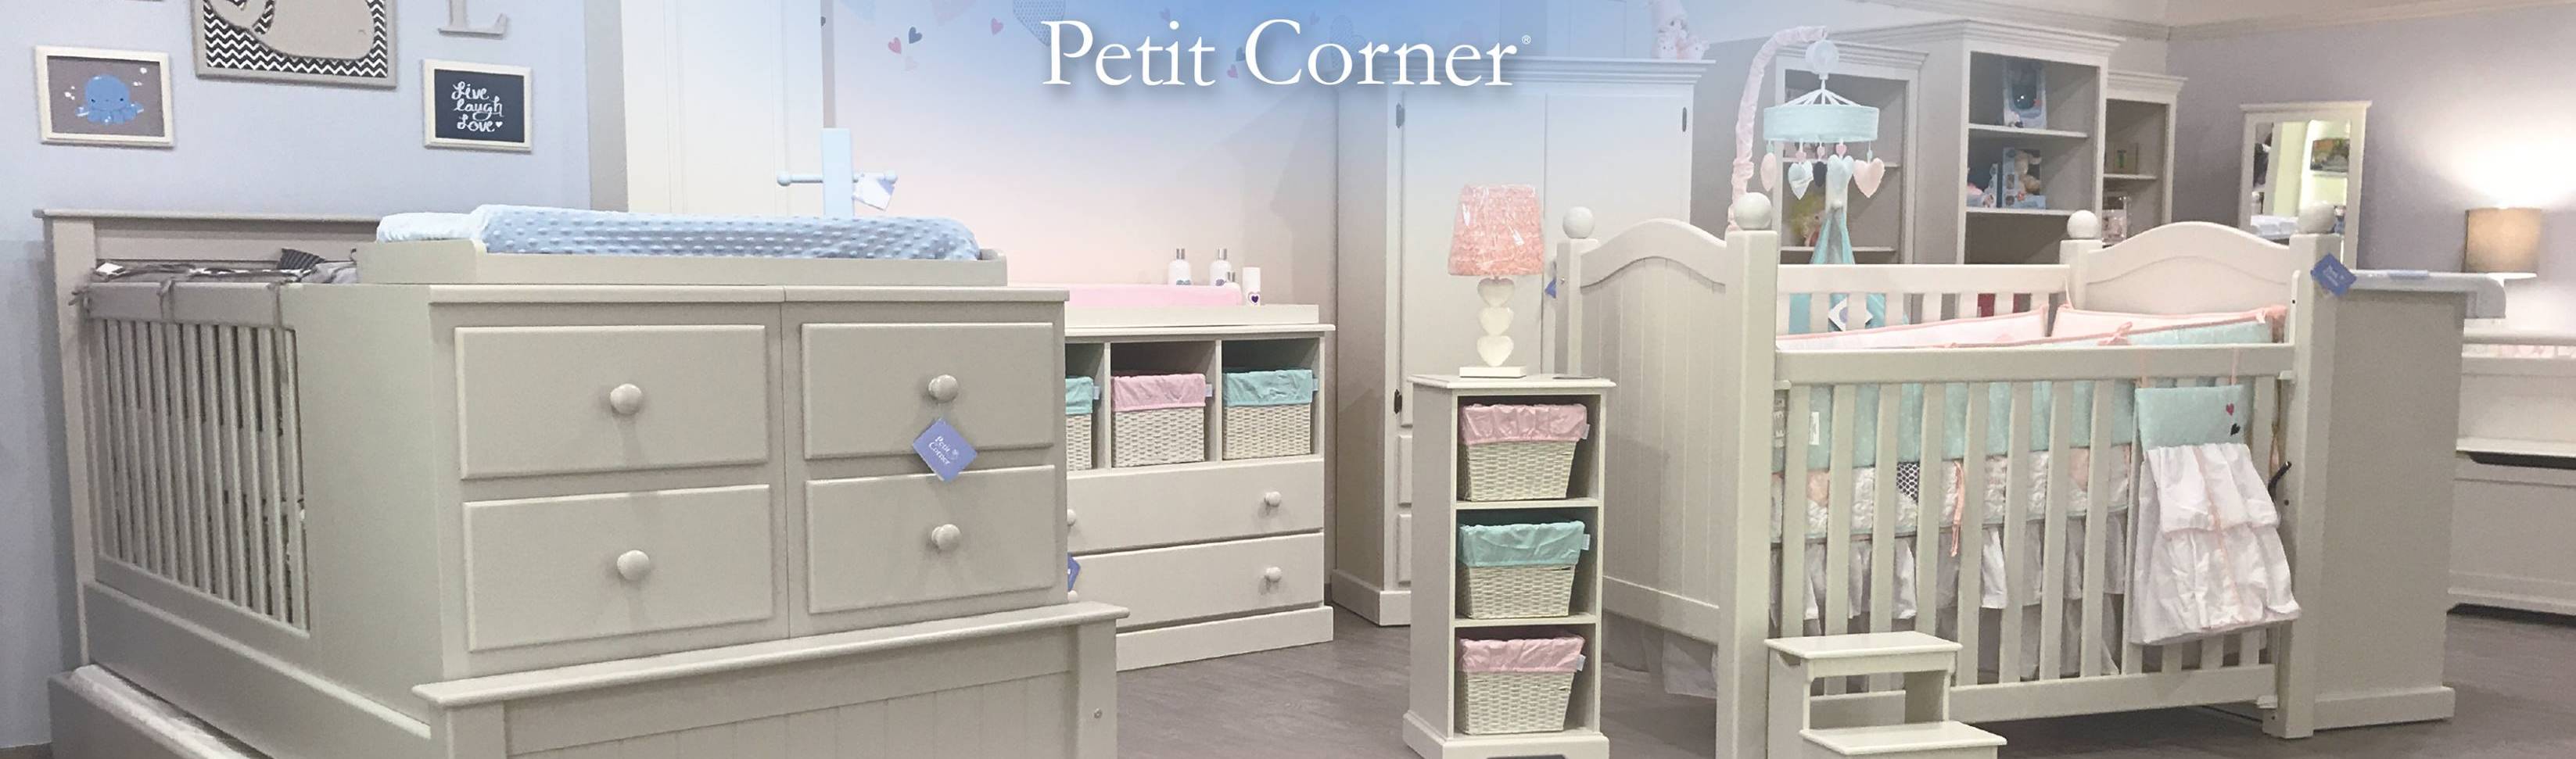 Petit Corner